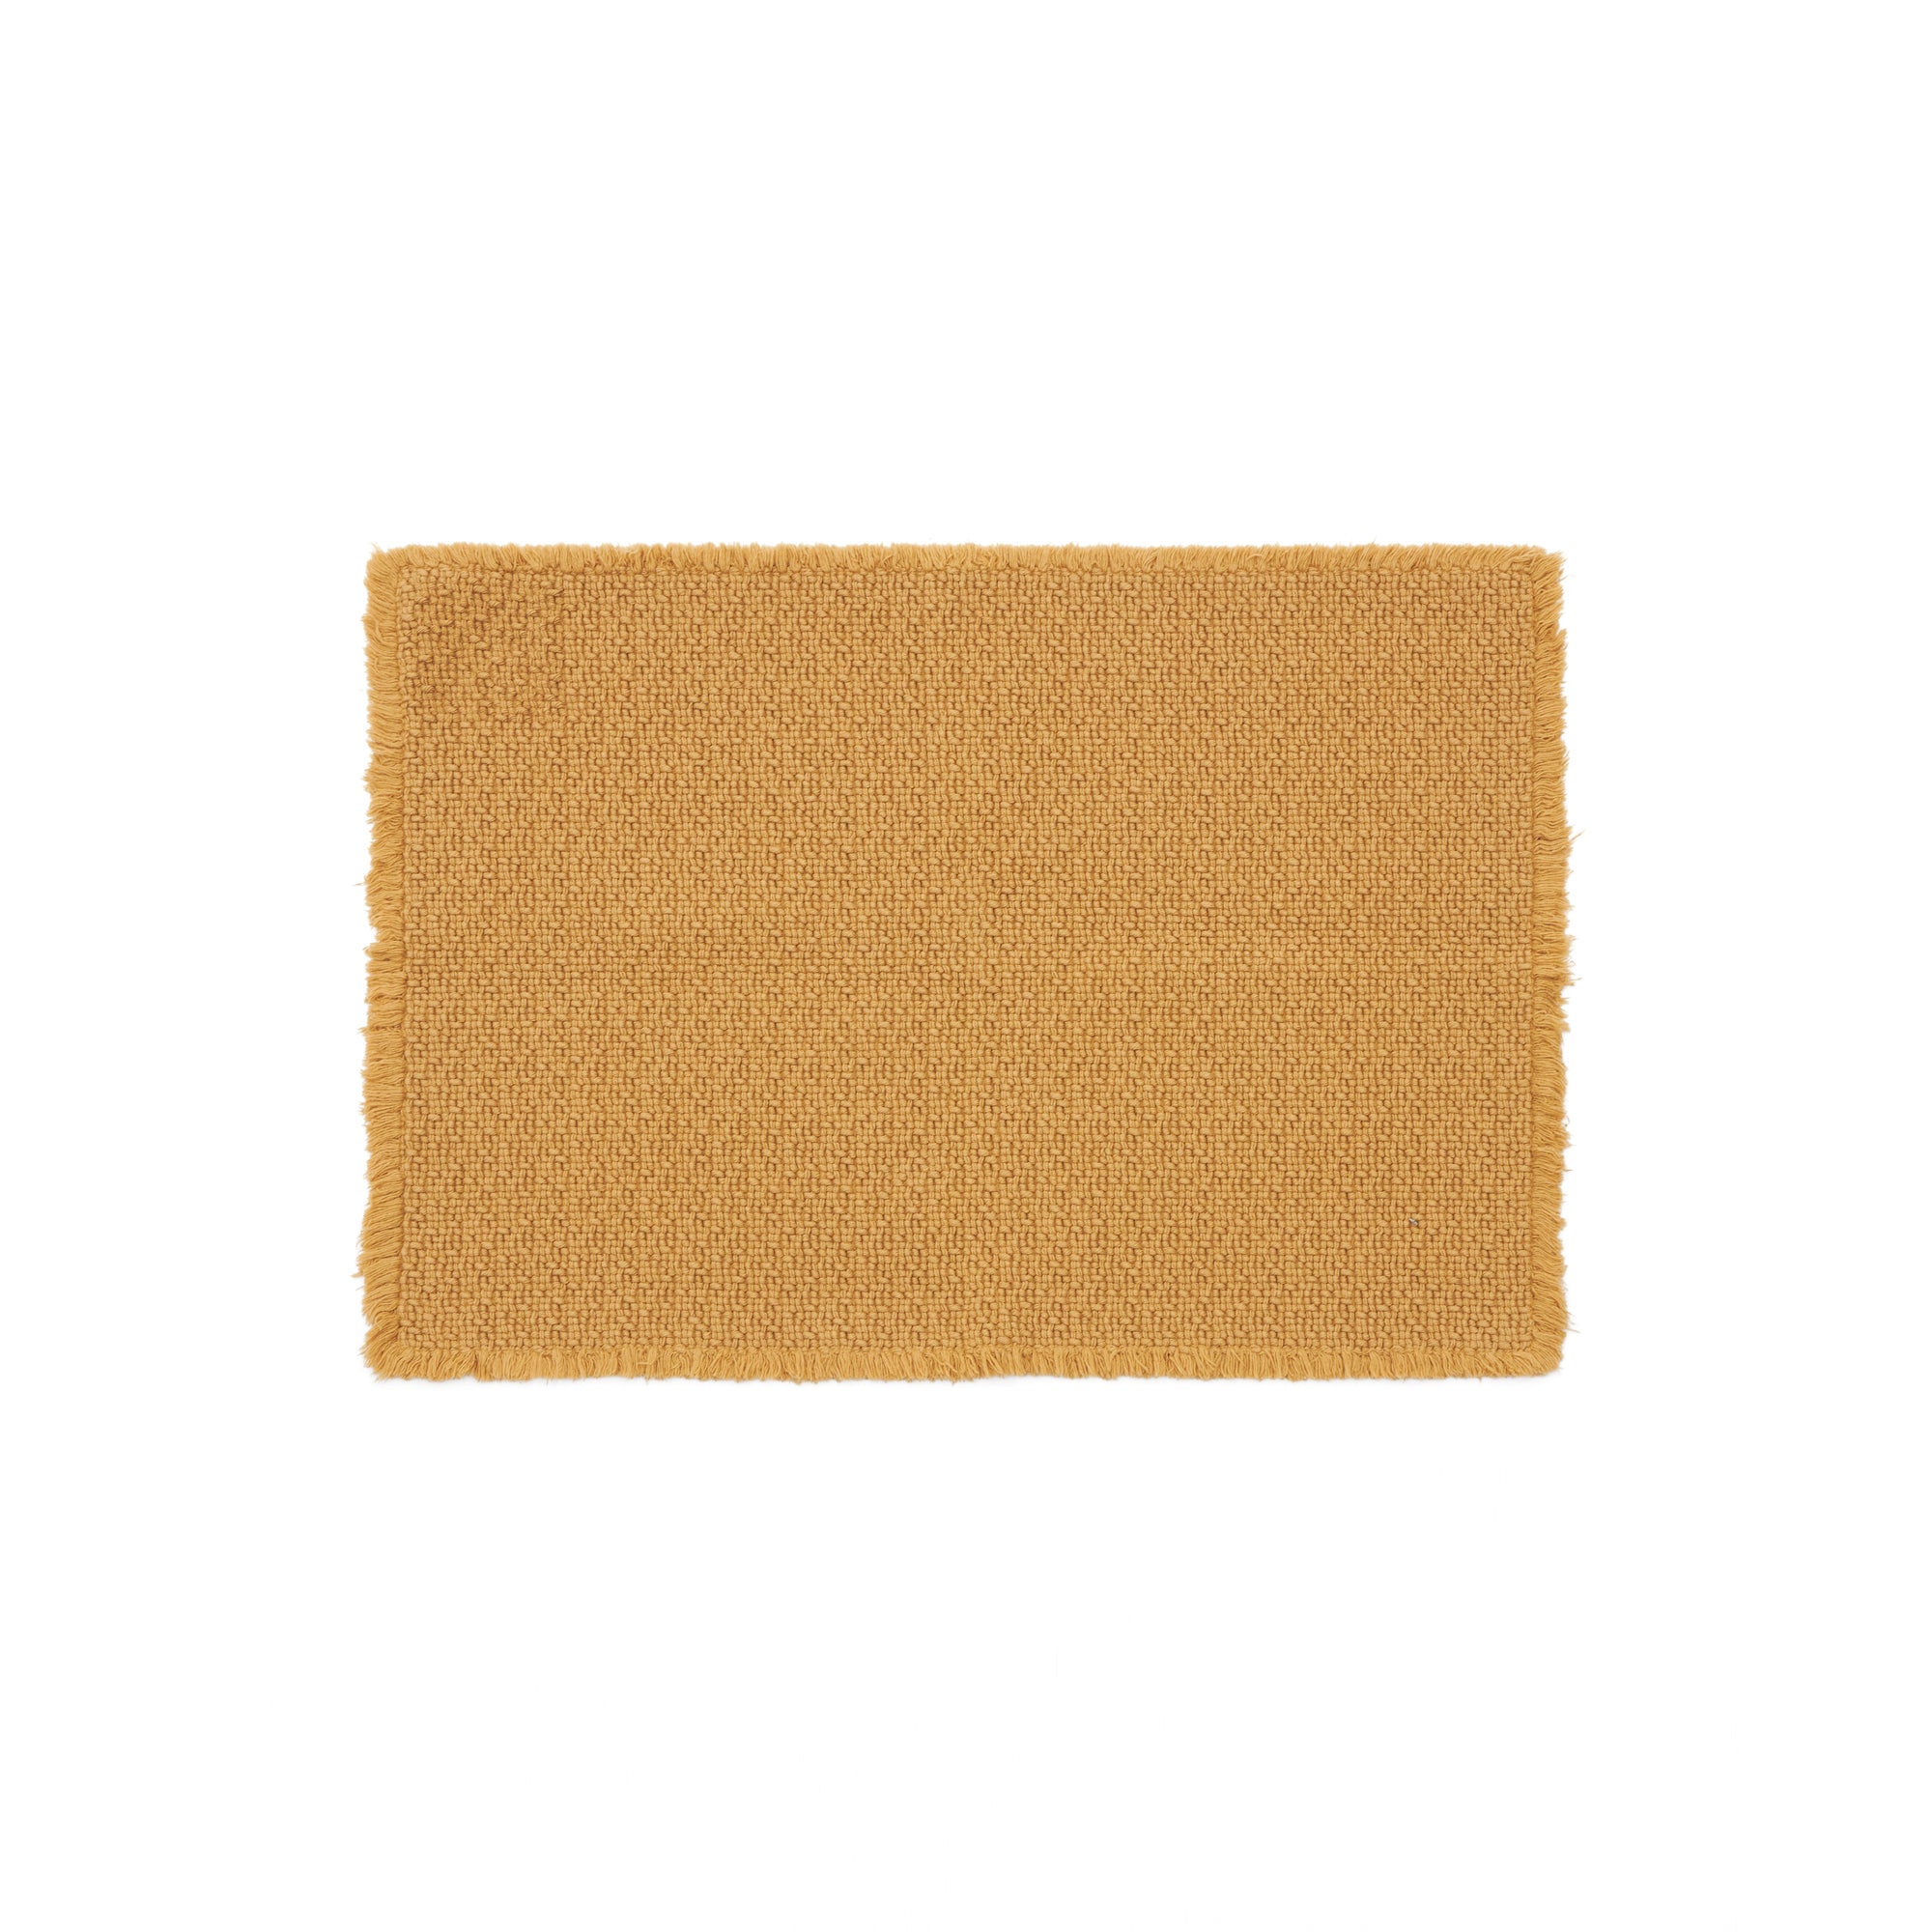 Minet 100% pamut fürdőszőnyeg mustár színben, 50 x 70 cm